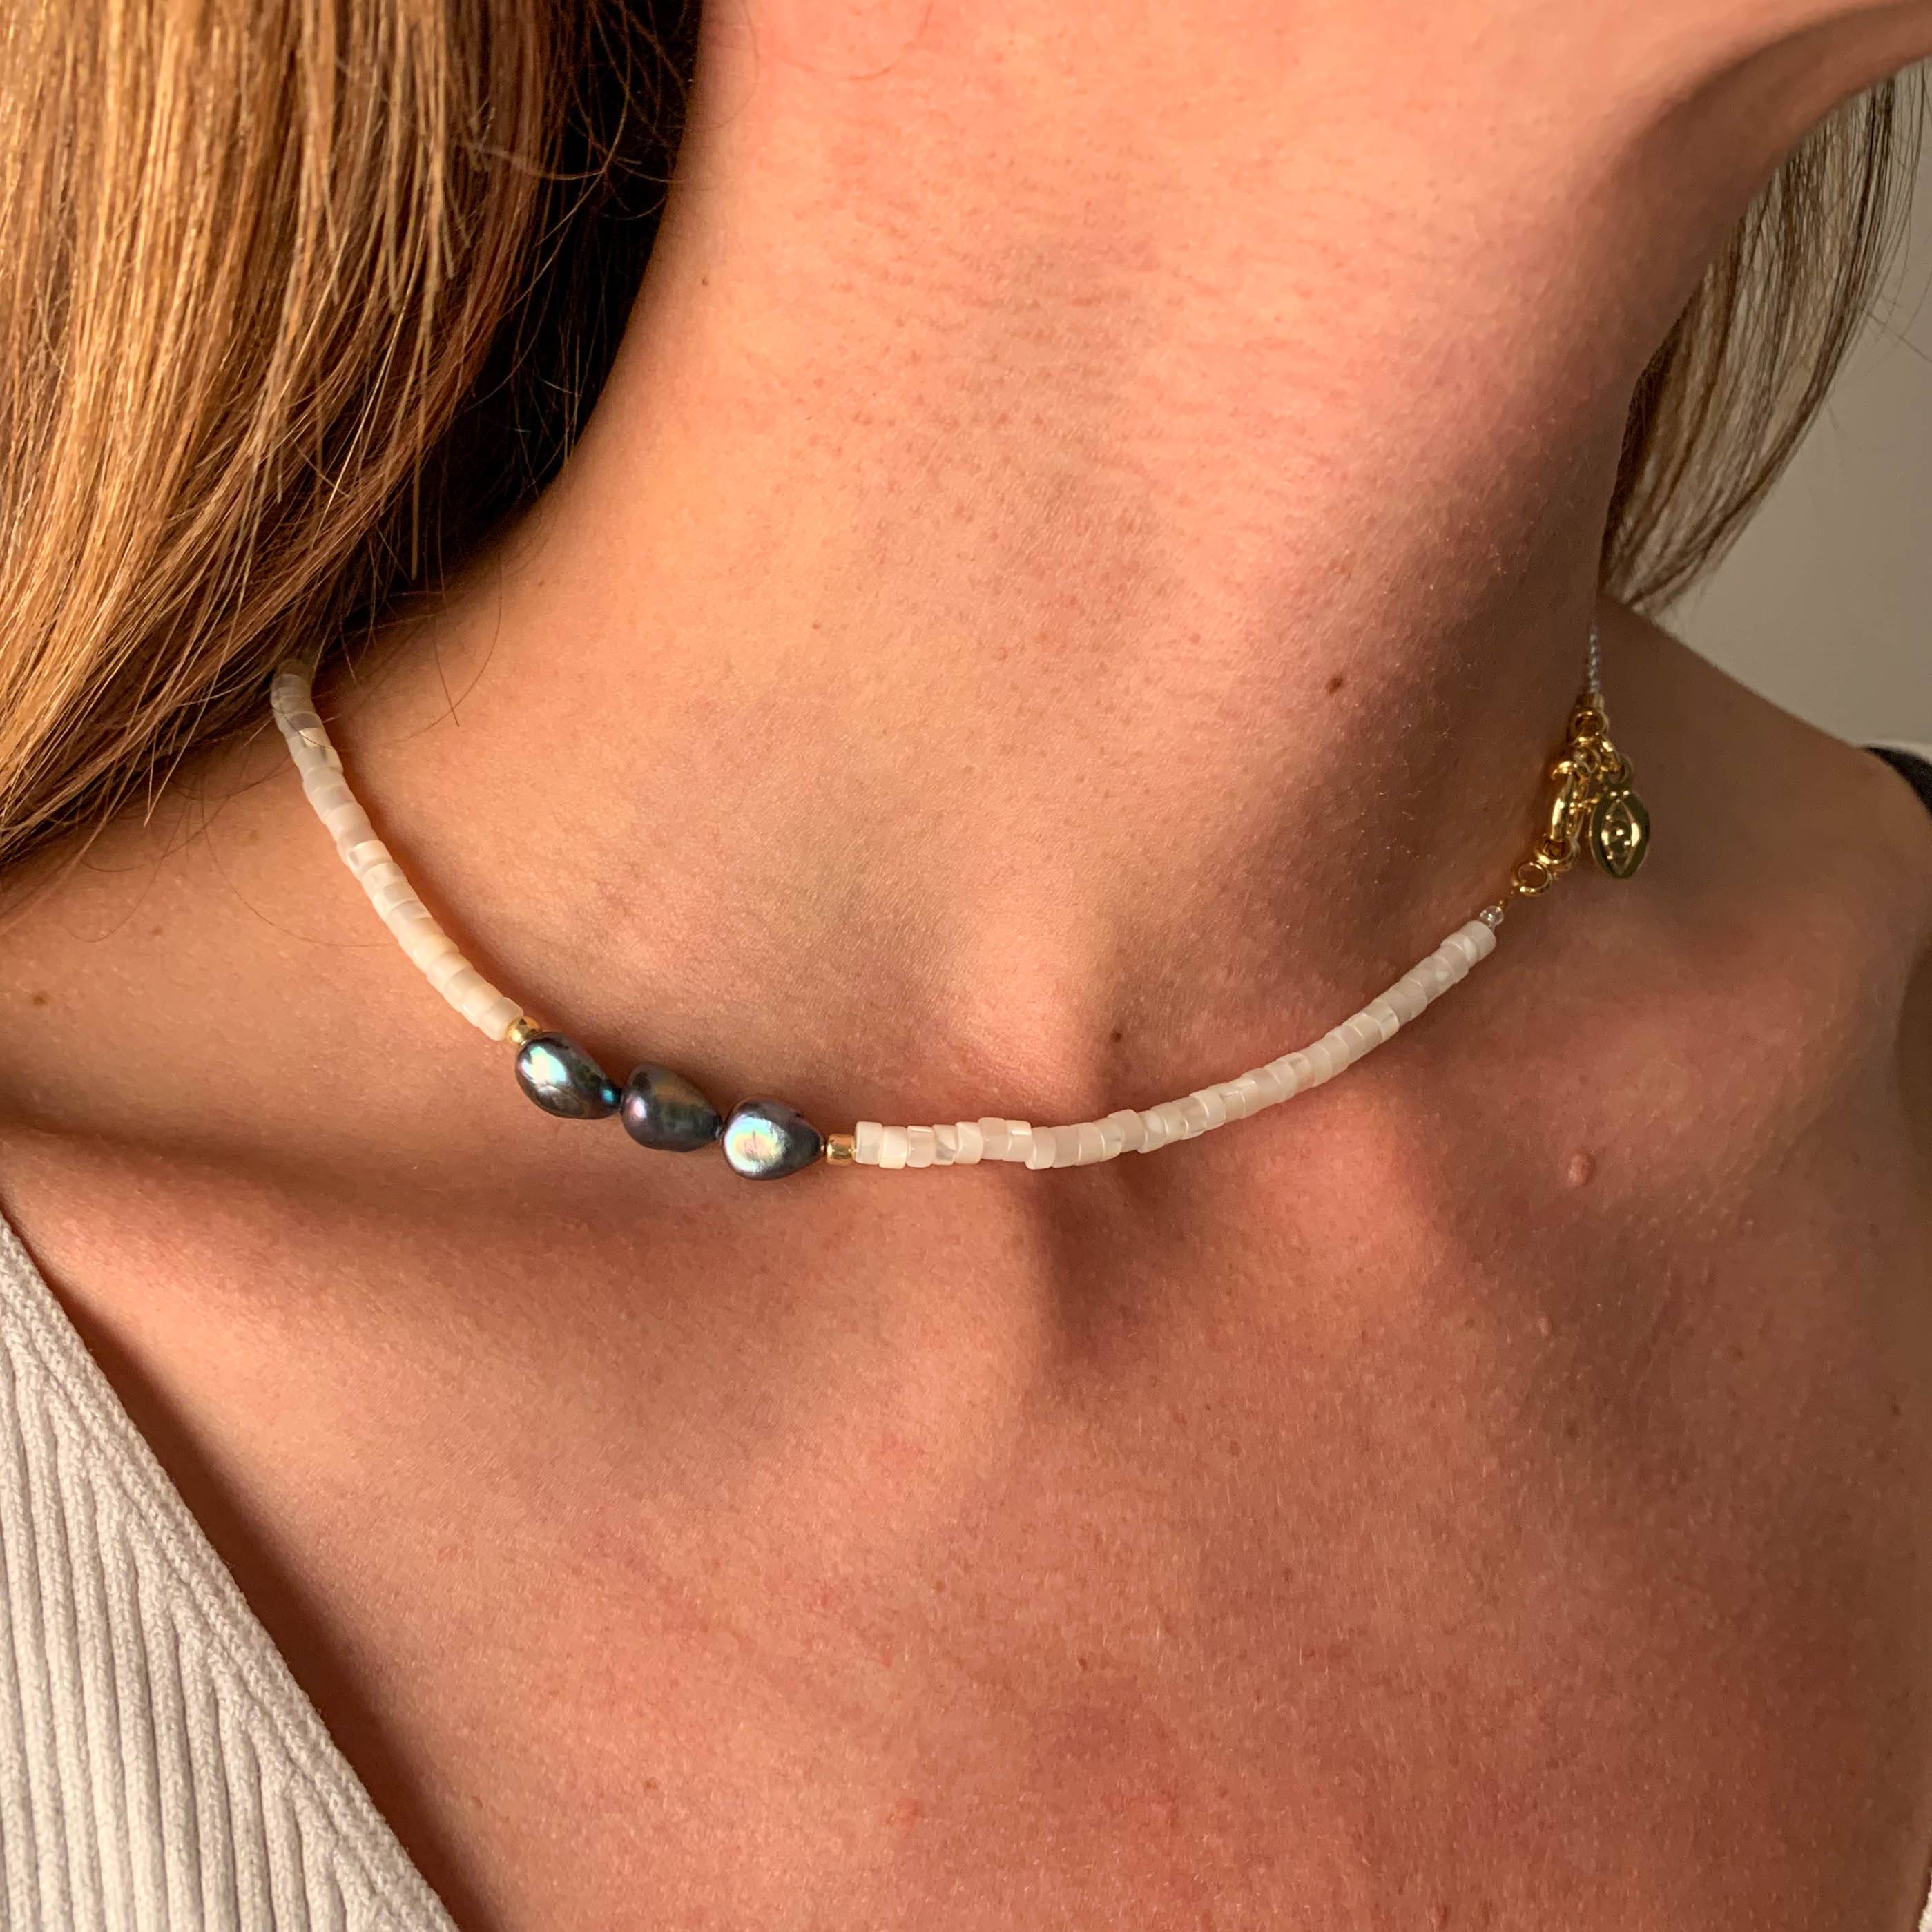 Halskette mit Perlmutt und blauer Perle vergoldet handgemacht - NooeBerlin